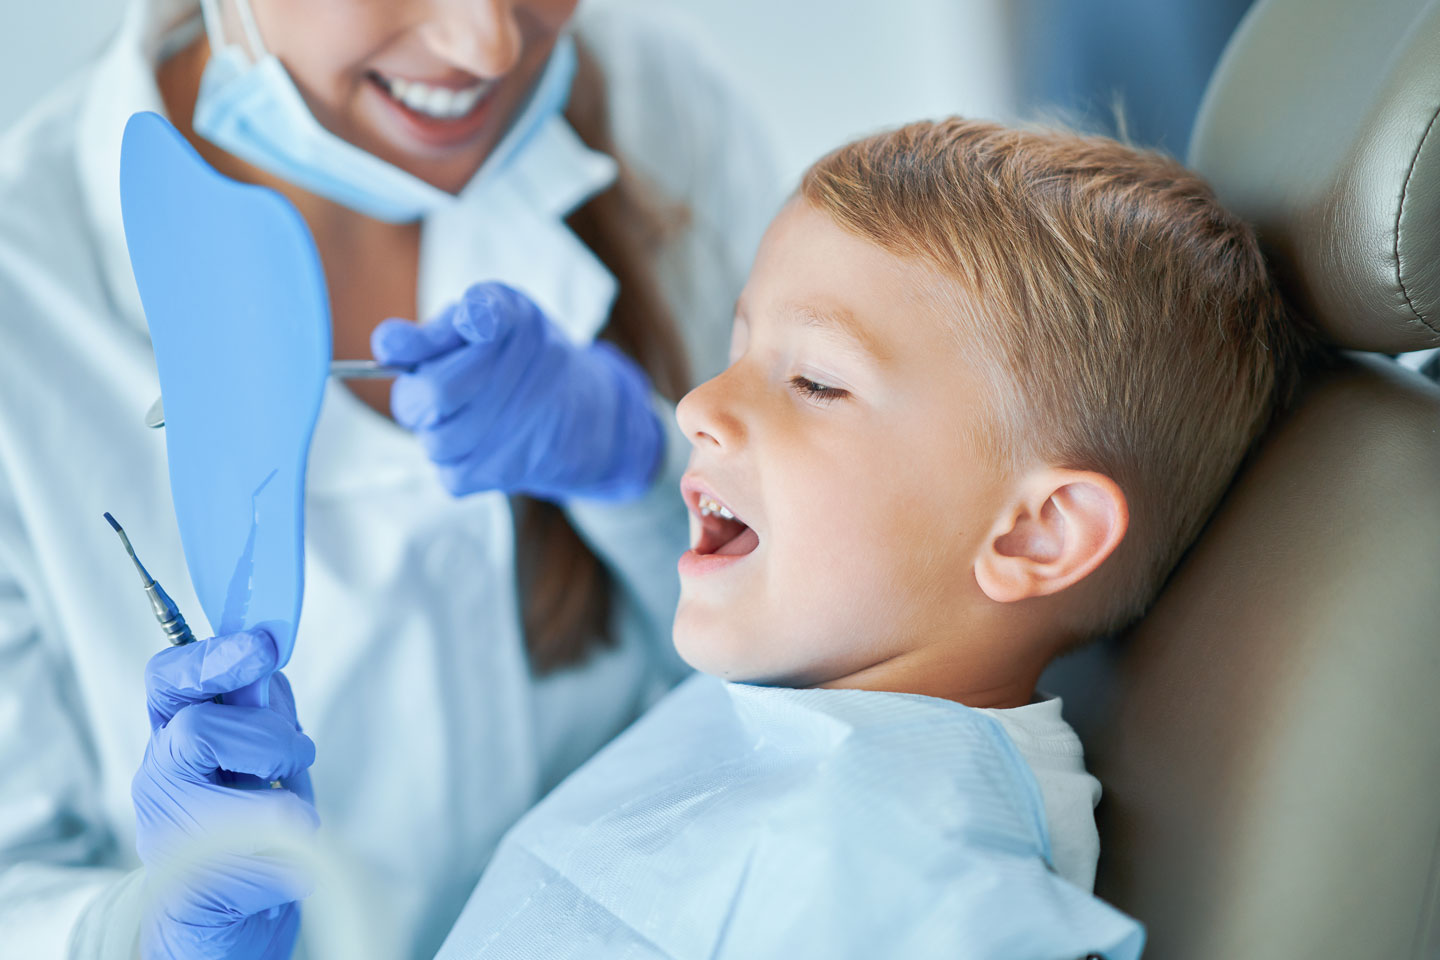 Prima visita dal dentista bambini